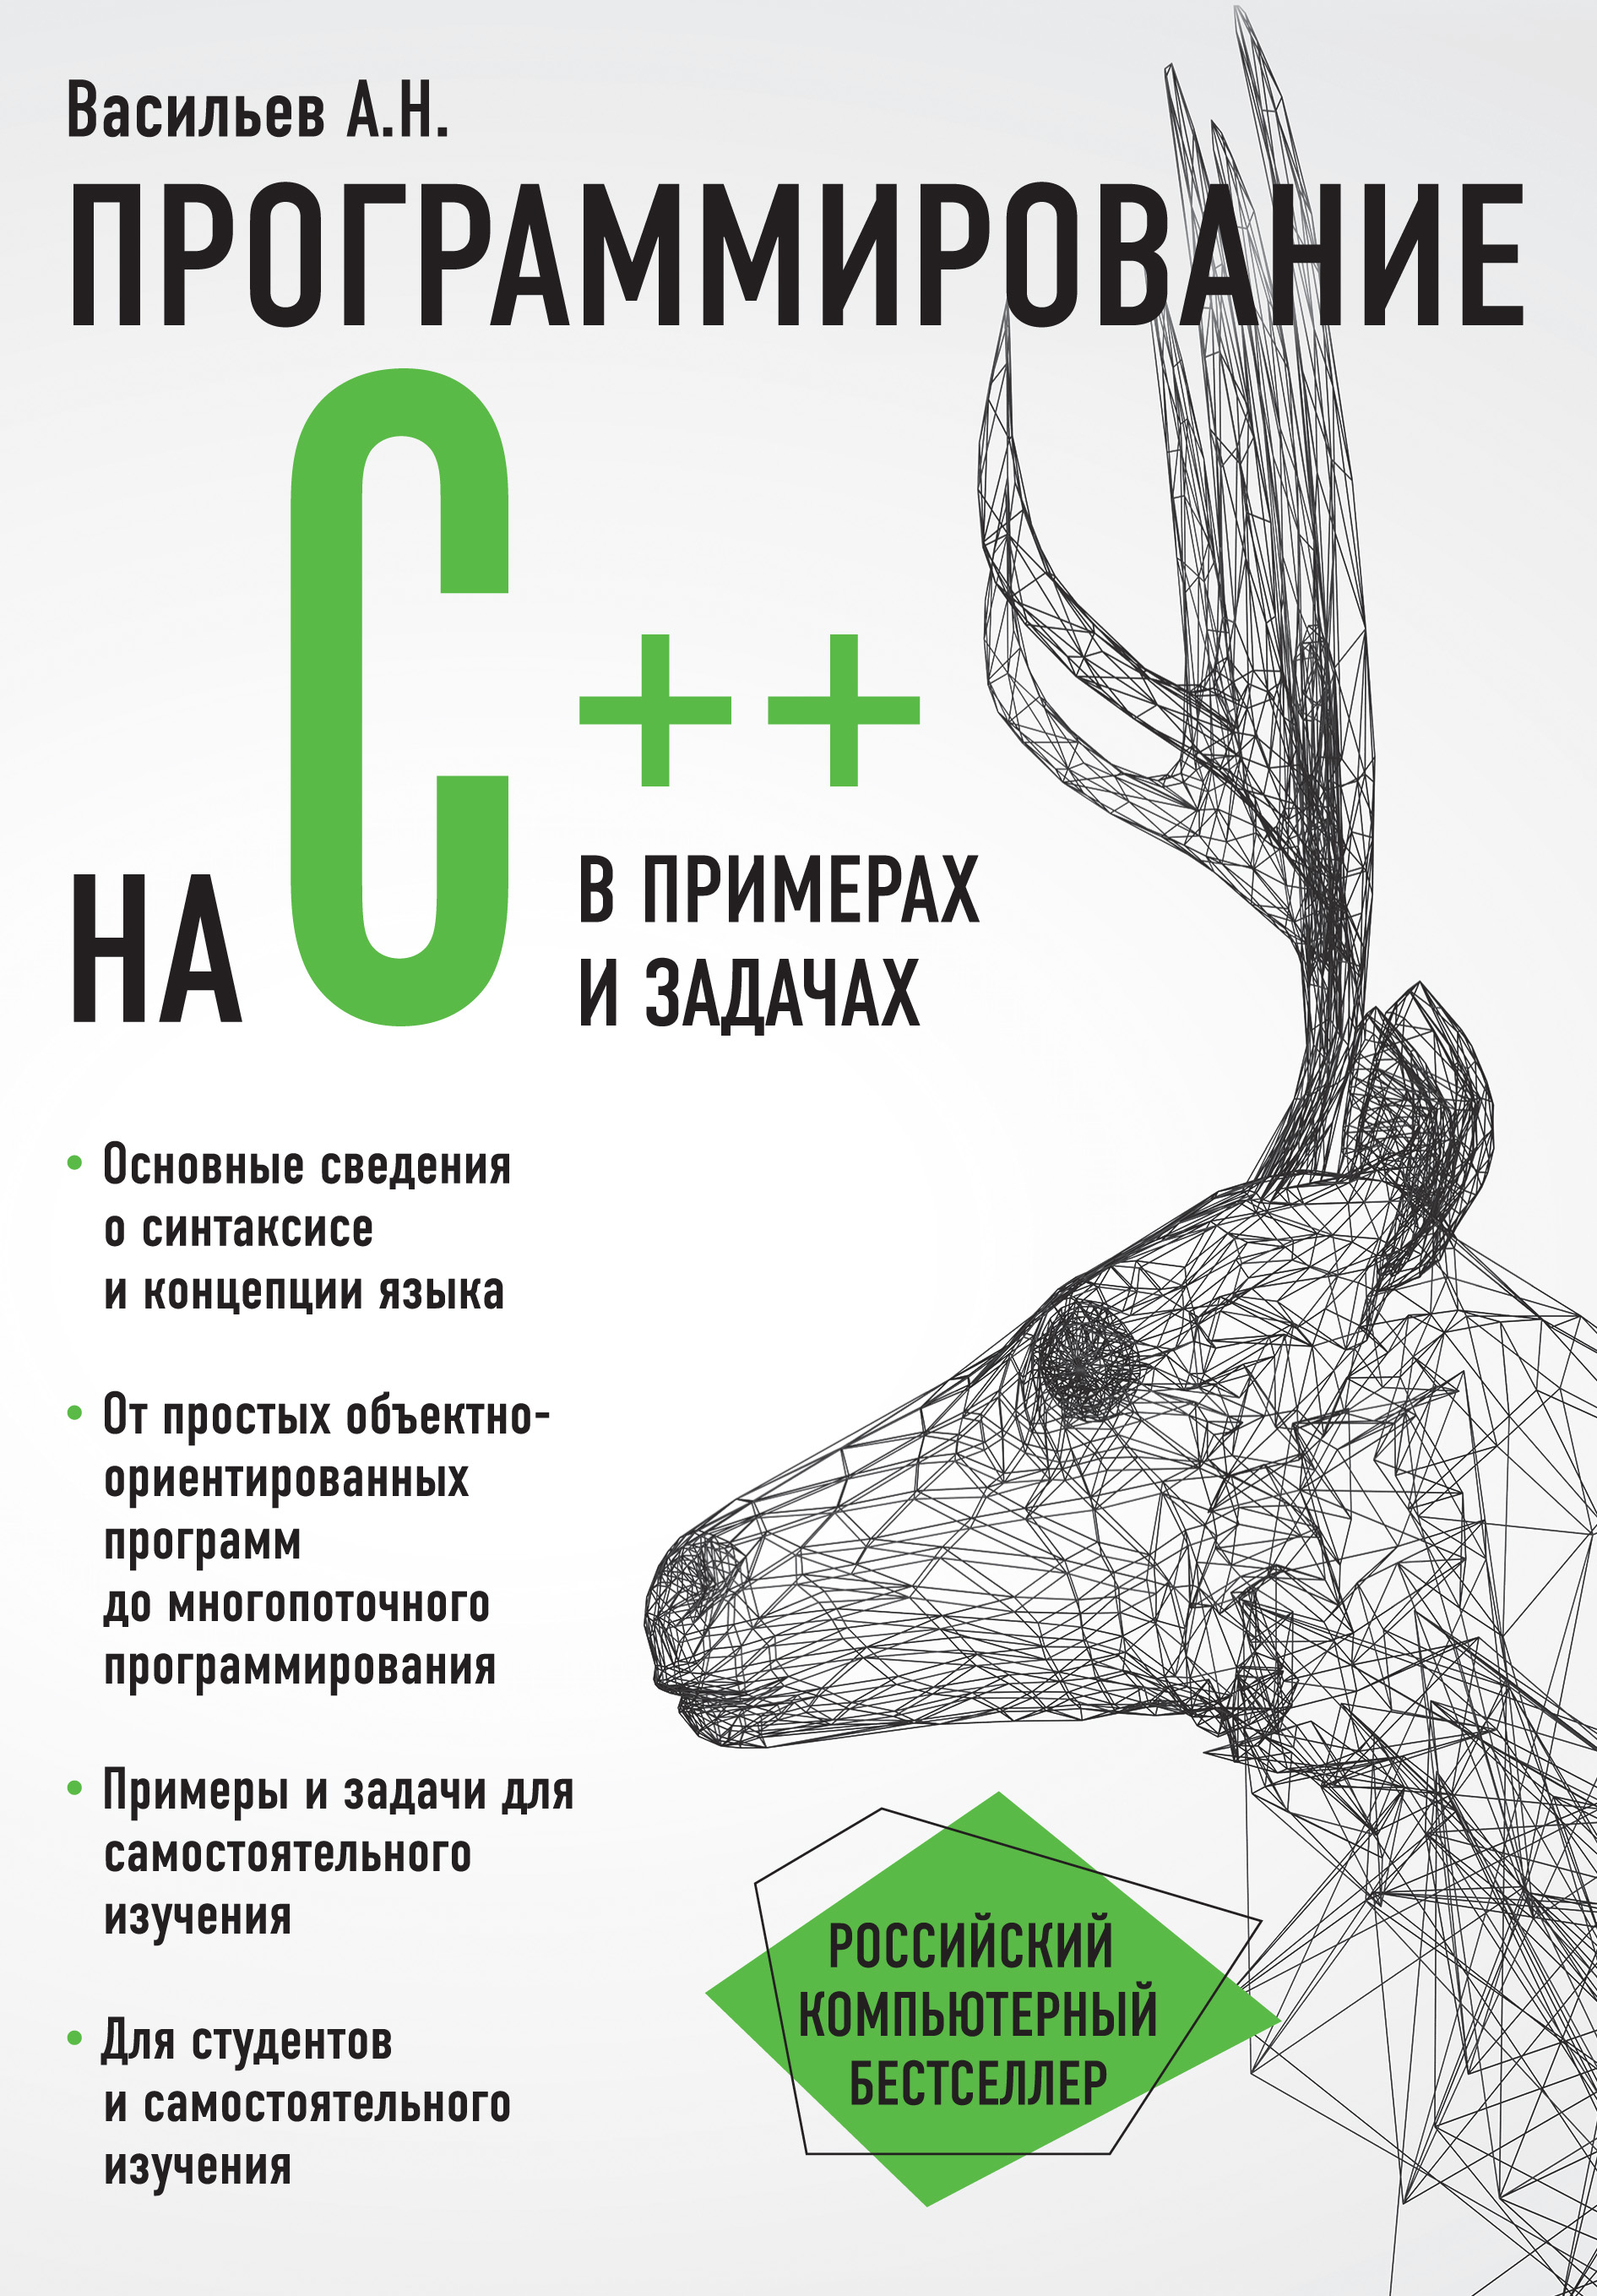 Книга Российский компьютерный бестселлер Программирование на C++ в примерах и задачах созданная Алексей Васильев может относится к жанру программирование. Стоимость электронной книги Программирование на C++ в примерах и задачах с идентификатором 22054458 составляет 379.00 руб.